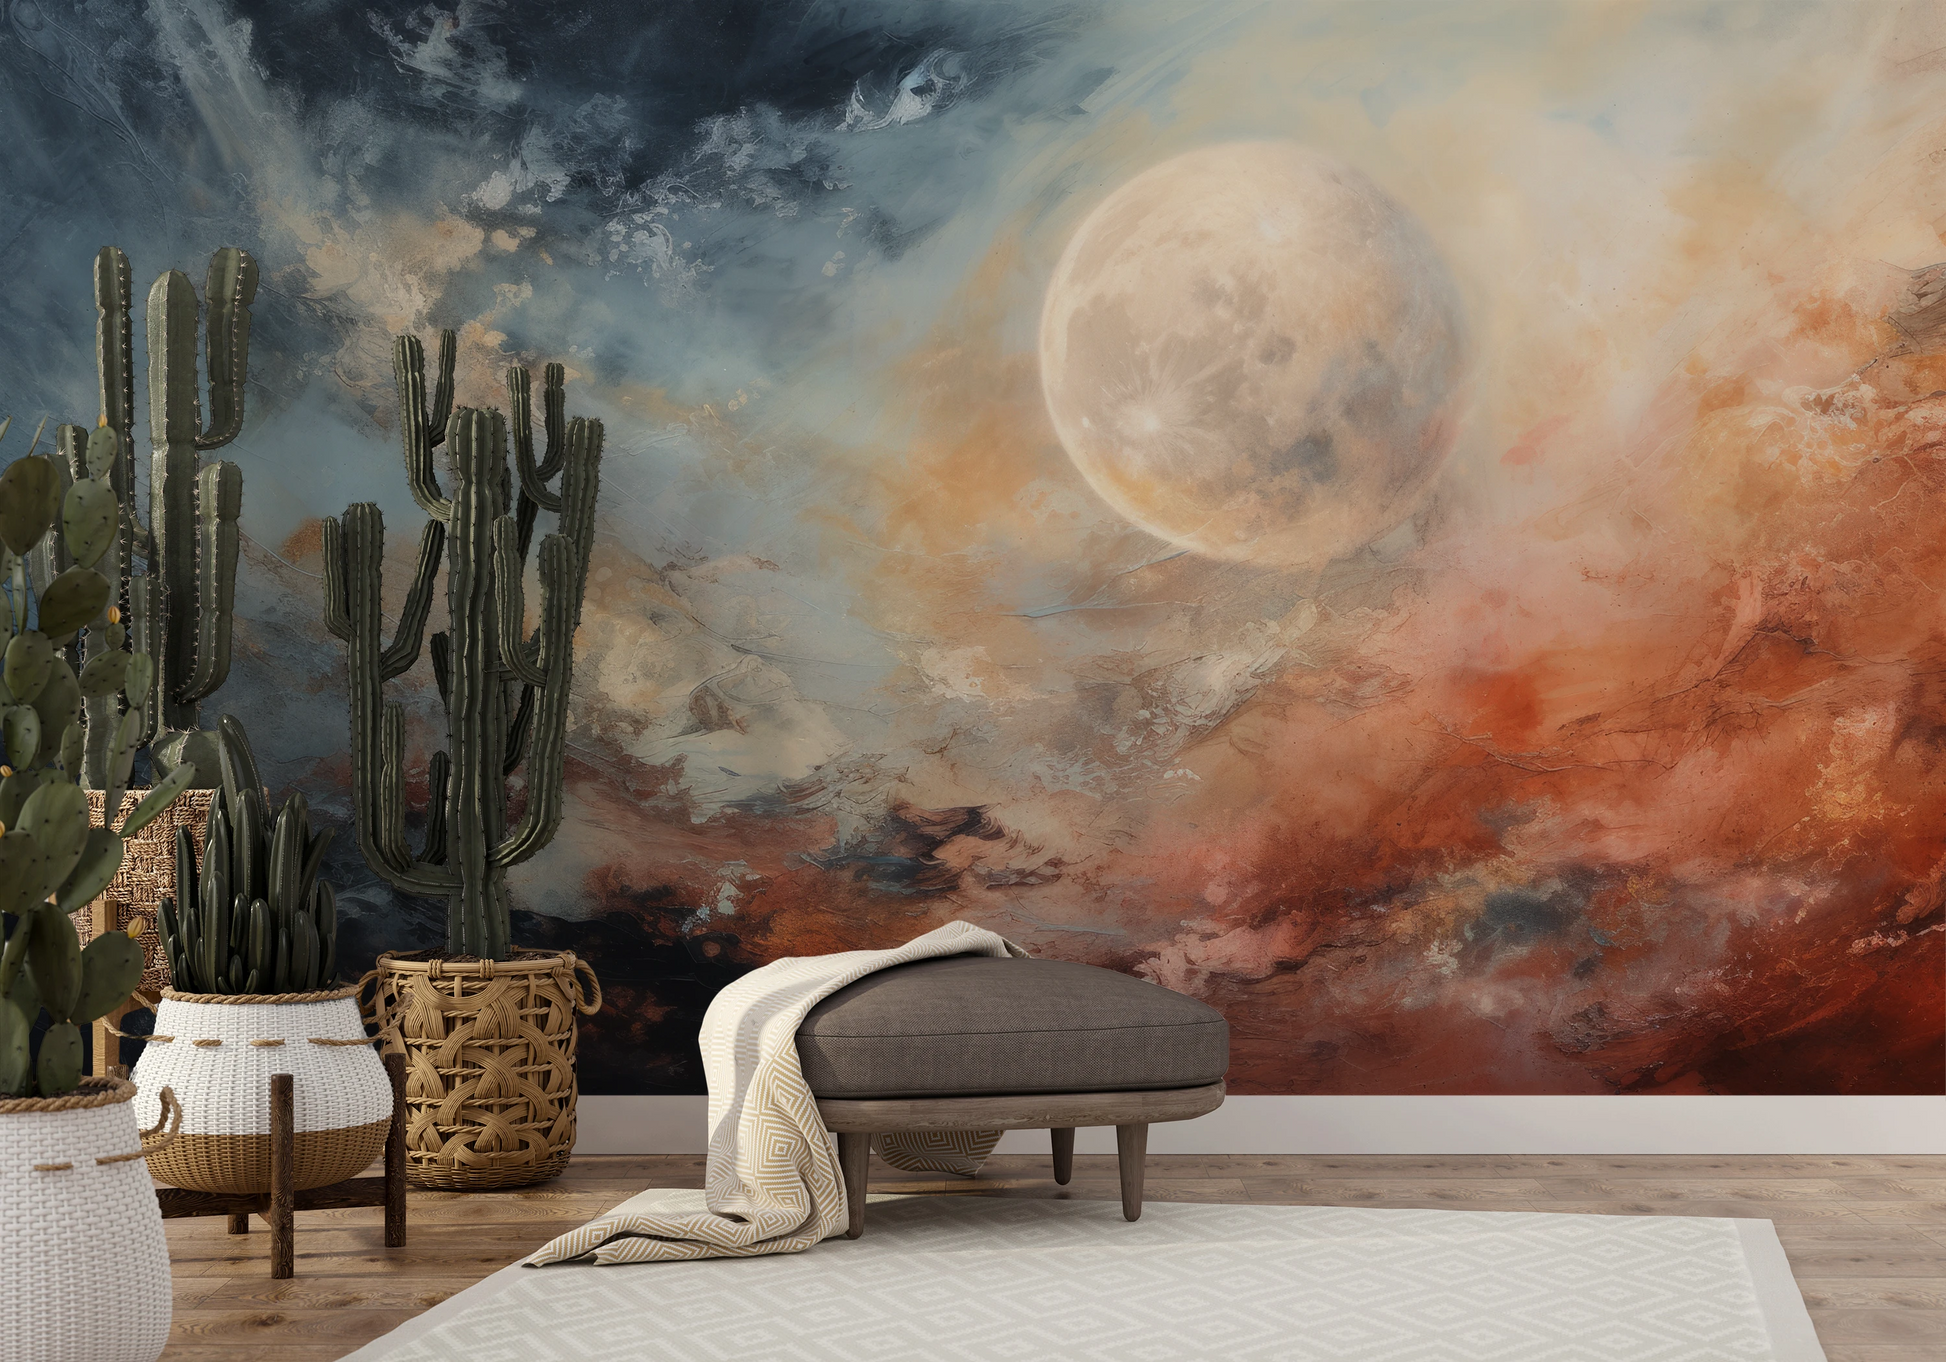 Fototapeta malowana o nazwie Moon's Monochrome pokazana w aranżacji wnętrza.